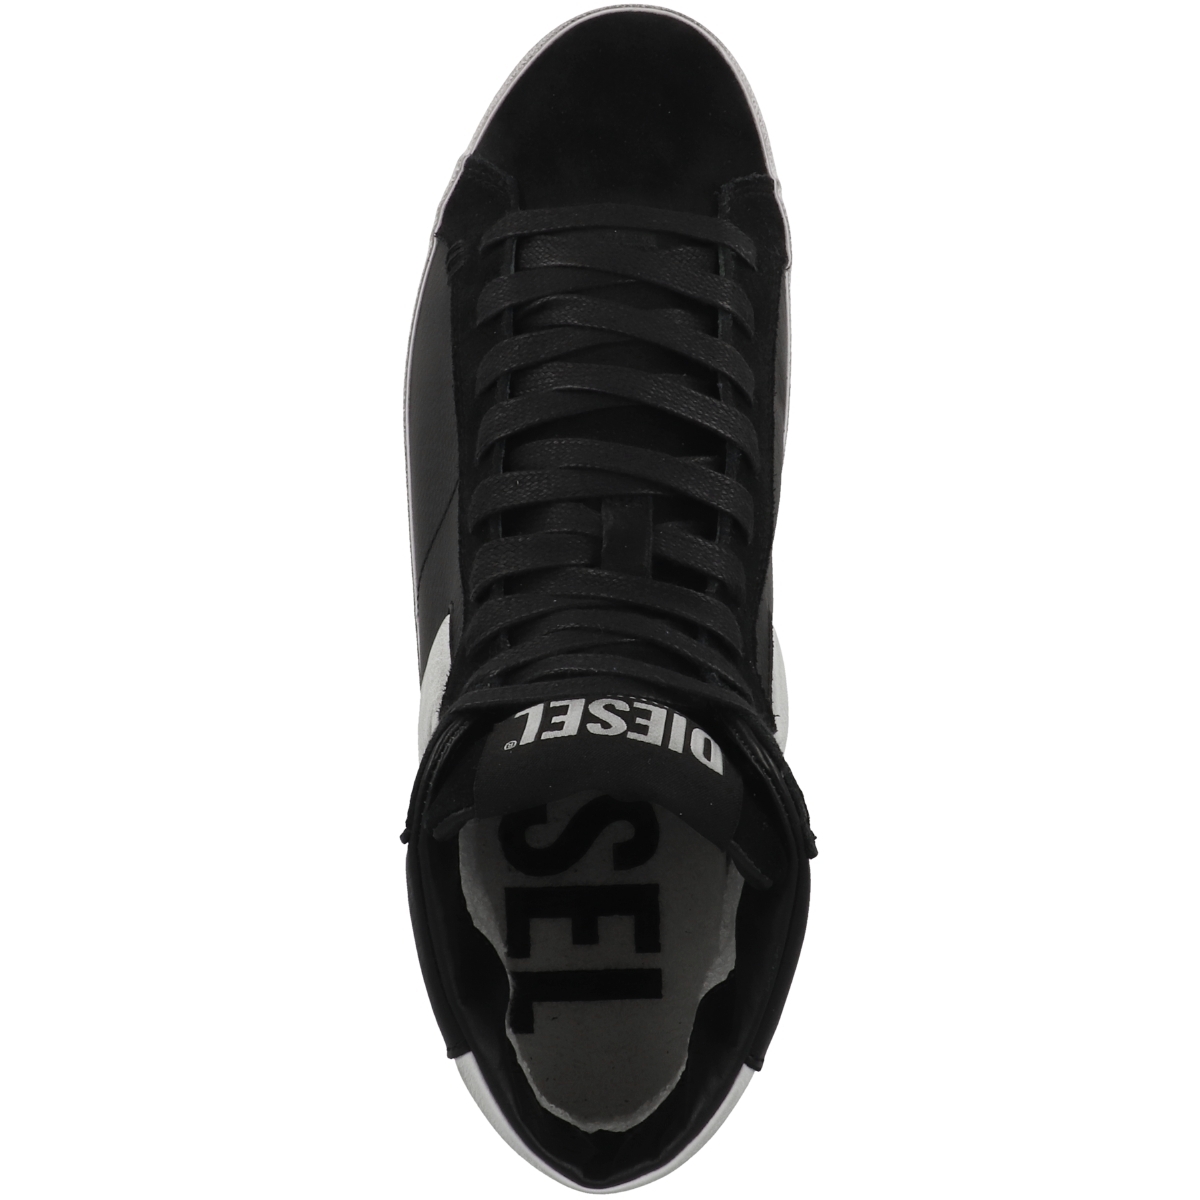 Diesel S-Leroji Mid Sneaker schwarz